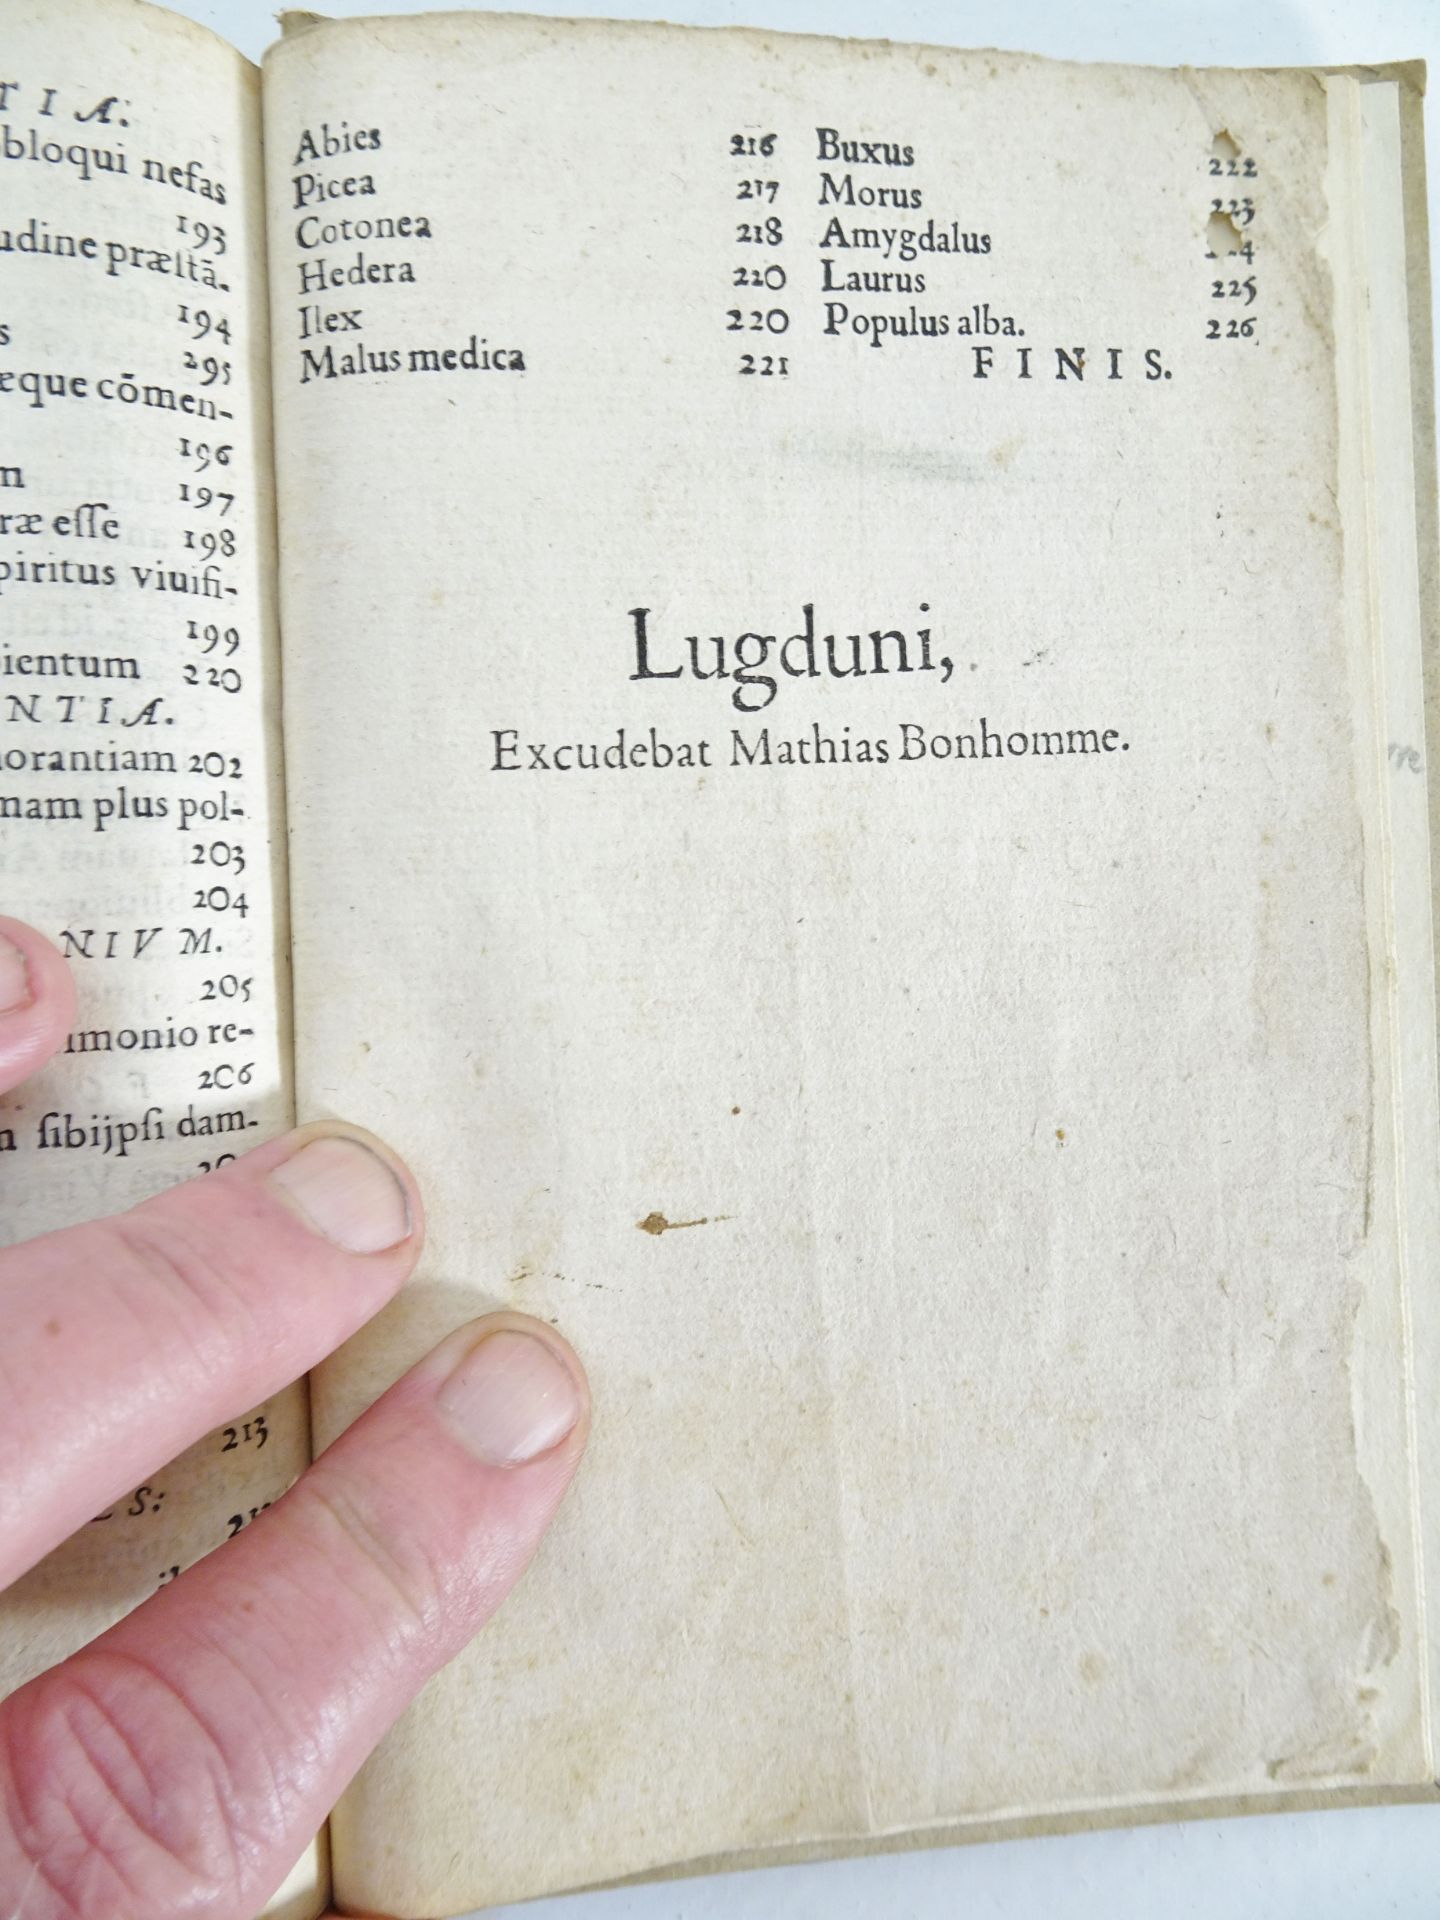 |Emblemata| Alciati Andrea, "Emblemata D.A. Alciati, denuo ab ipso Autore…", 1551 - Bild 19 aus 21